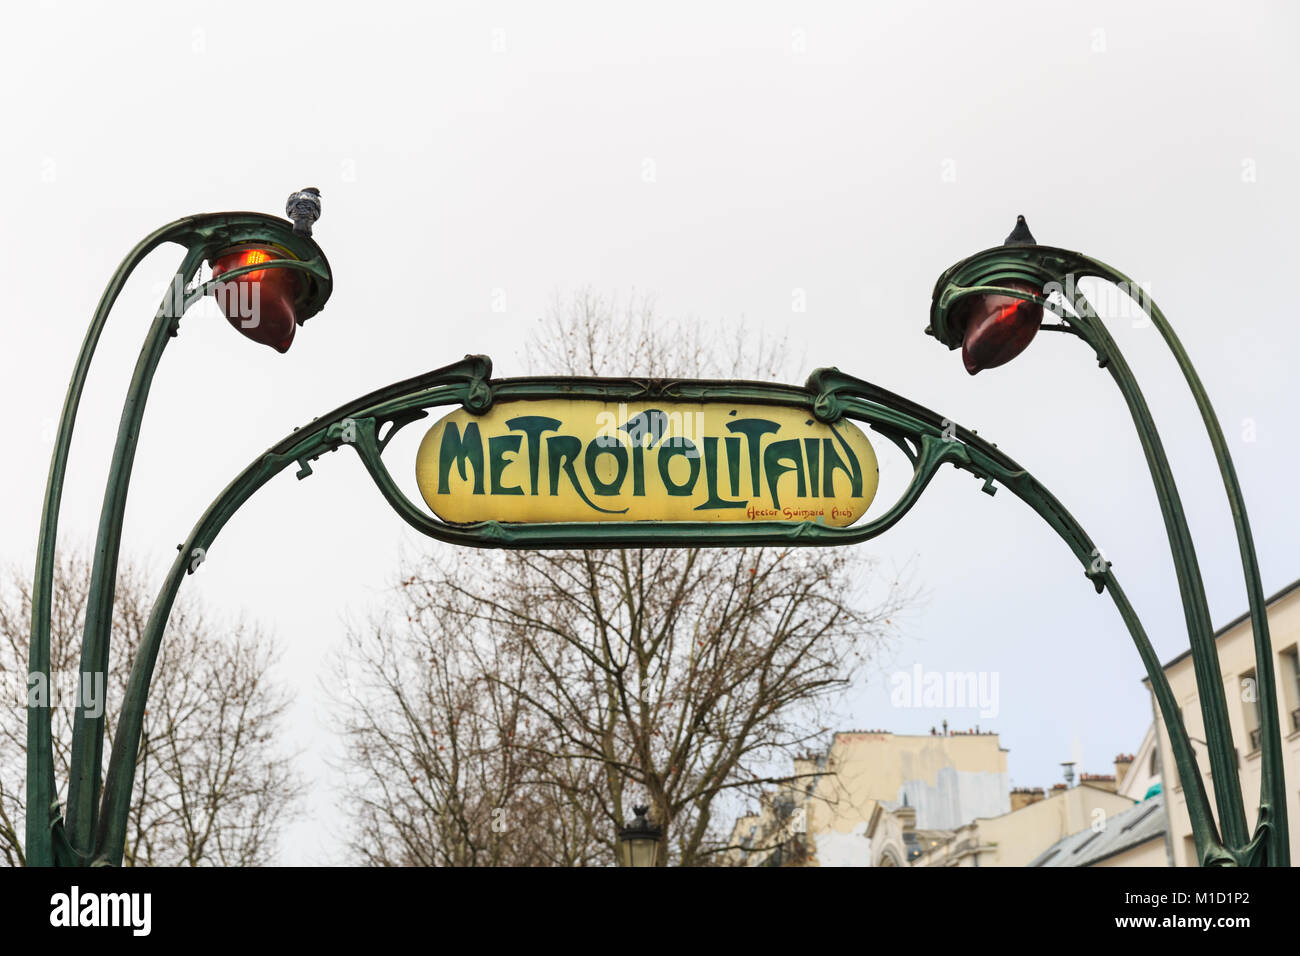 Paris Métro o segno Métropolitain e ingresso alla stazione di Anvers, trattenuto tra due lampioni ornati, in francese architettura Art Nouveau, Parigi, Francia Foto Stock